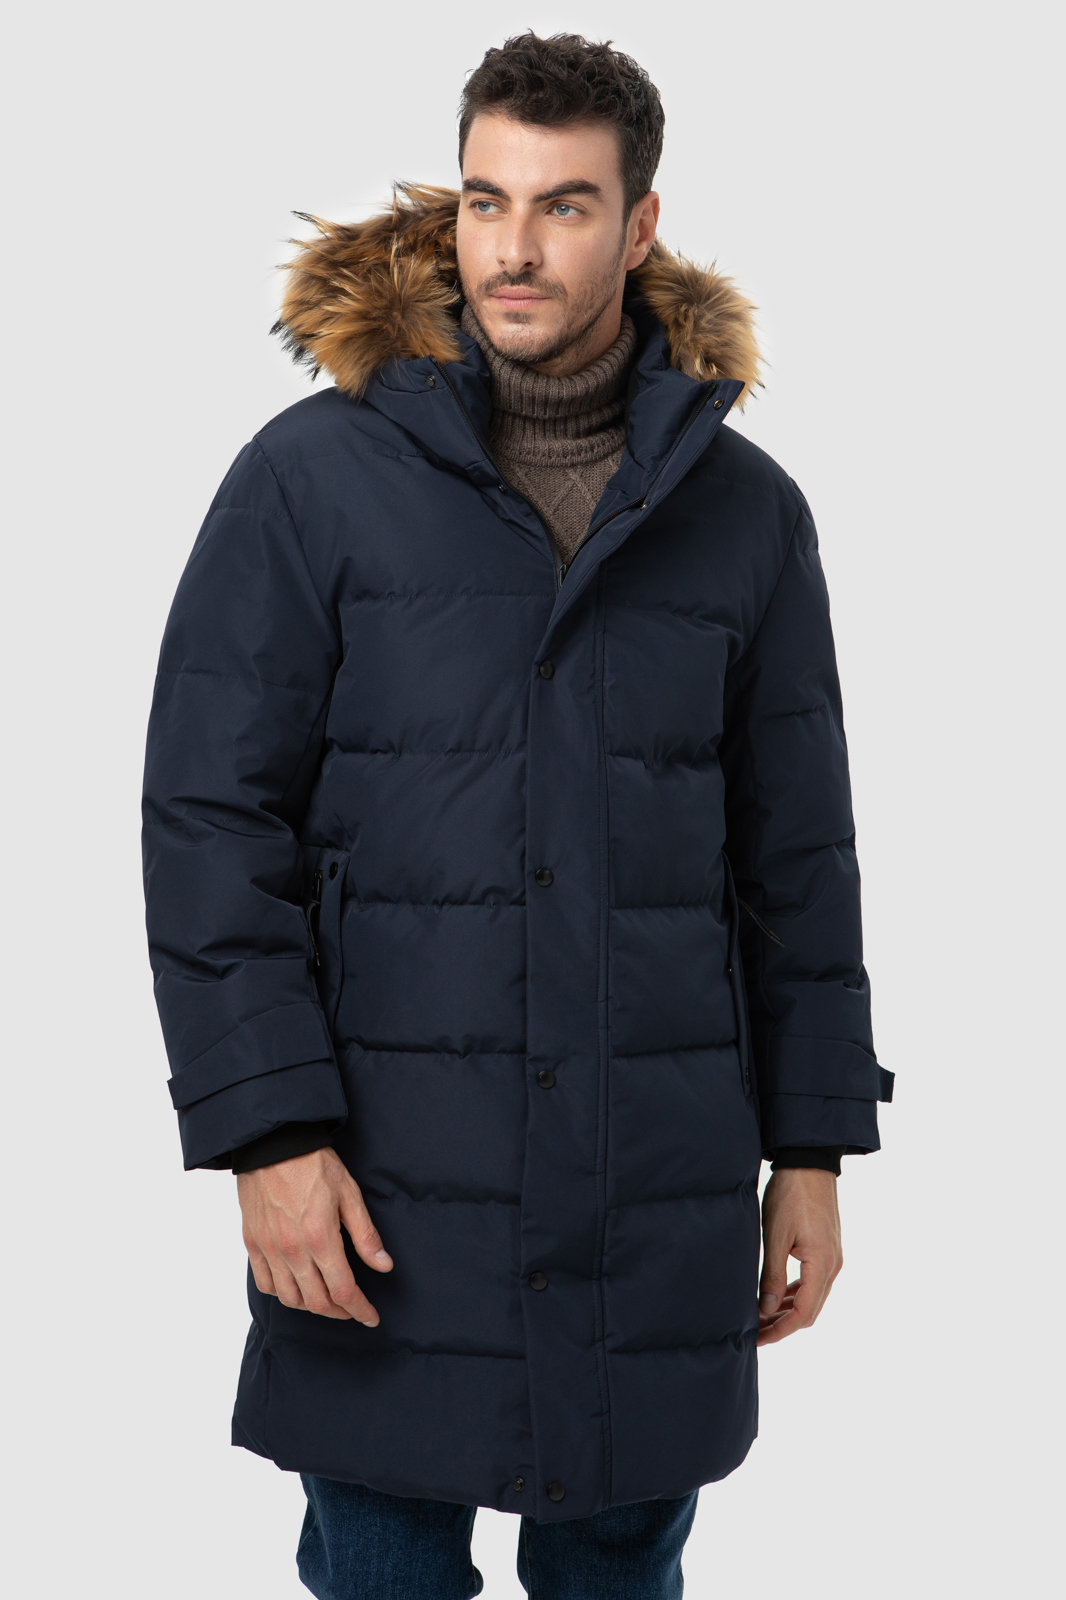 Зимние куртки - купить теплые женские куртки на зиму в интернет магазине | VelesModa